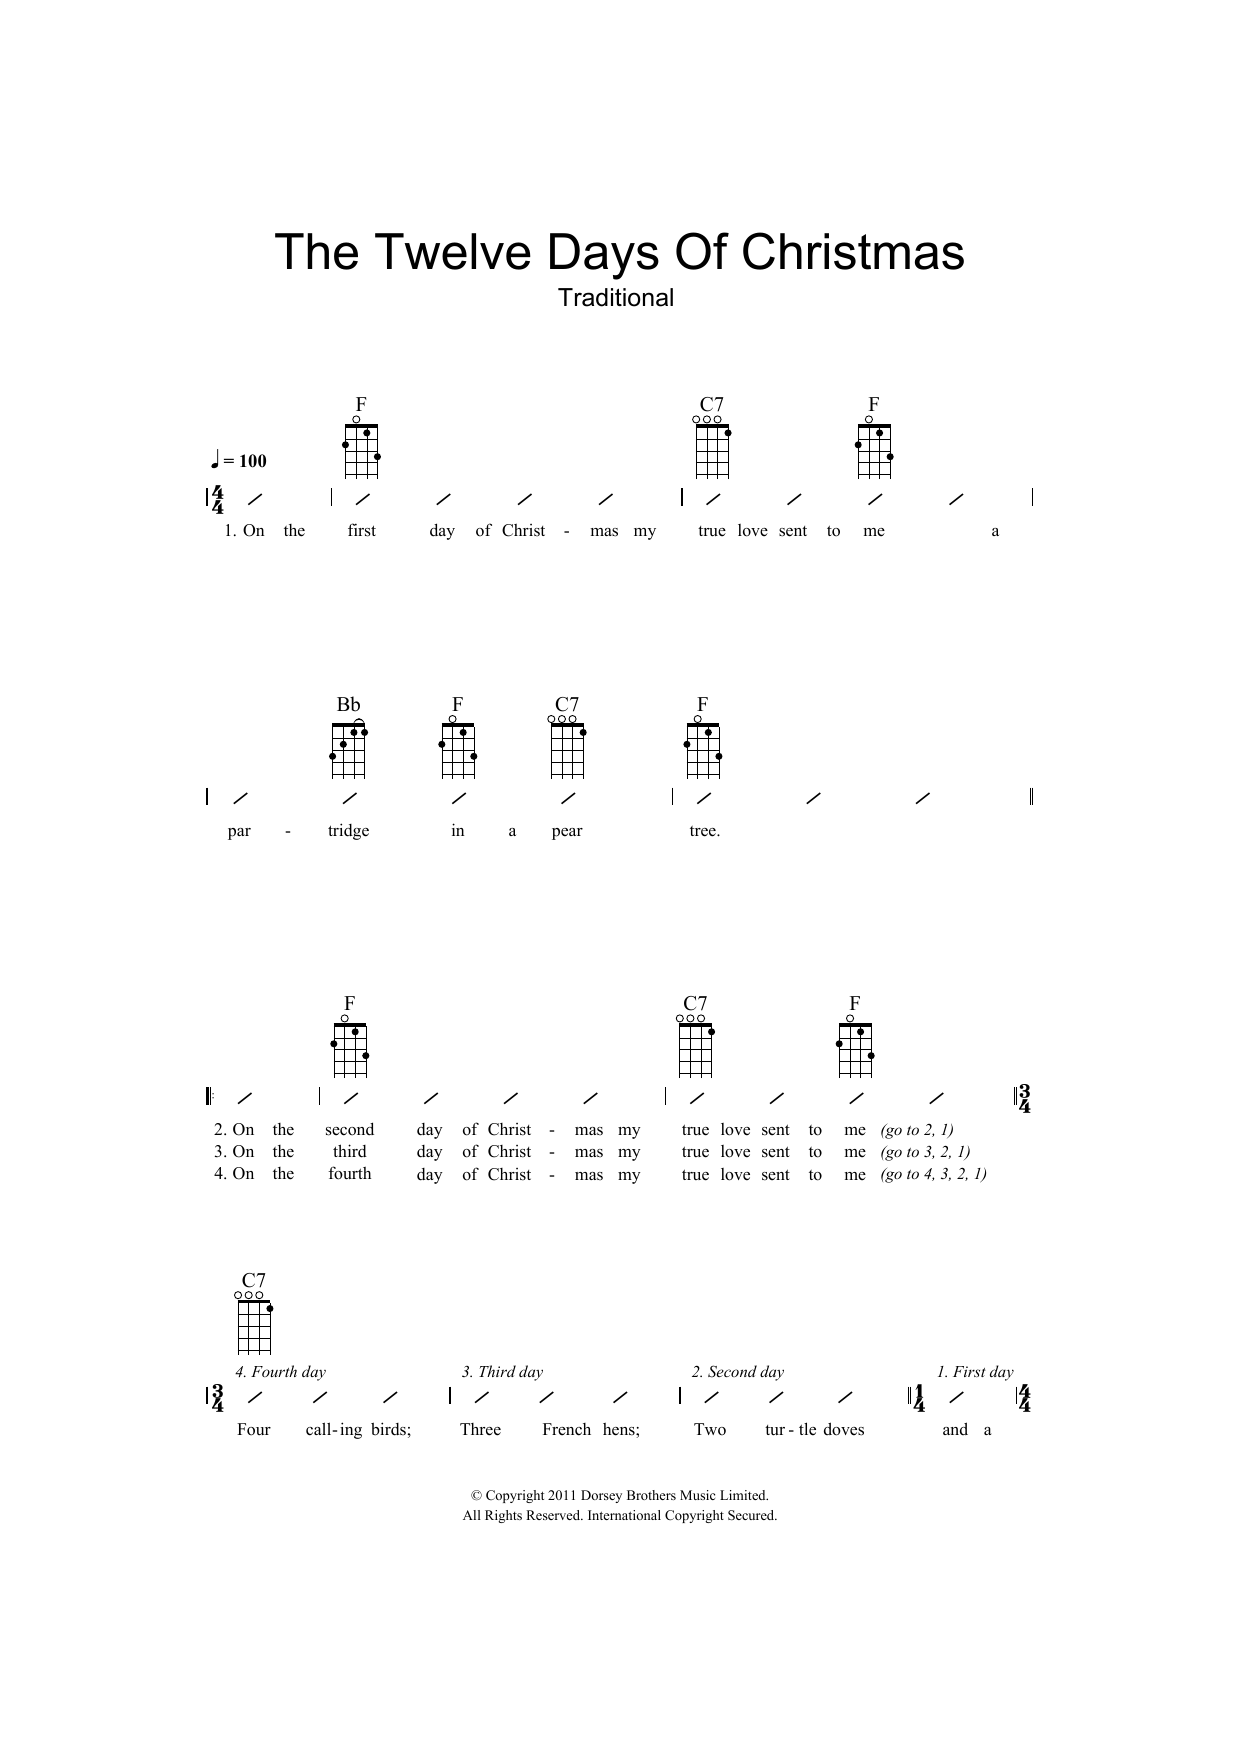 Traditional The Twelve Days Of Christmas sheet music notes and chords arranged for Ukulele Chords/Lyrics